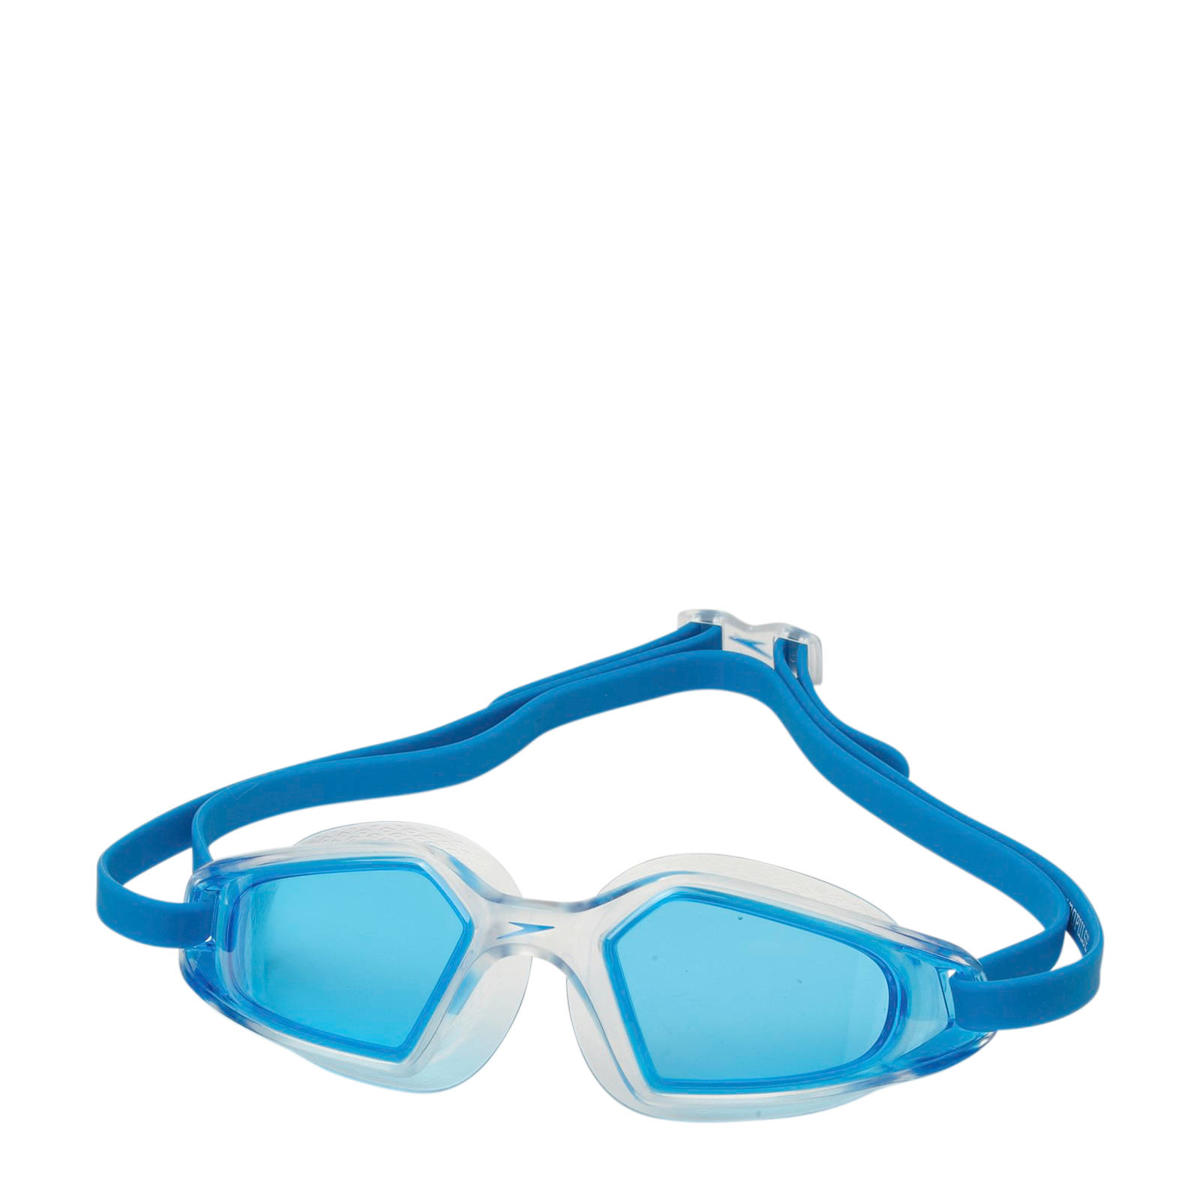 Hij Afstotend as Speedo zwembril Hydropulse blauw | wehkamp